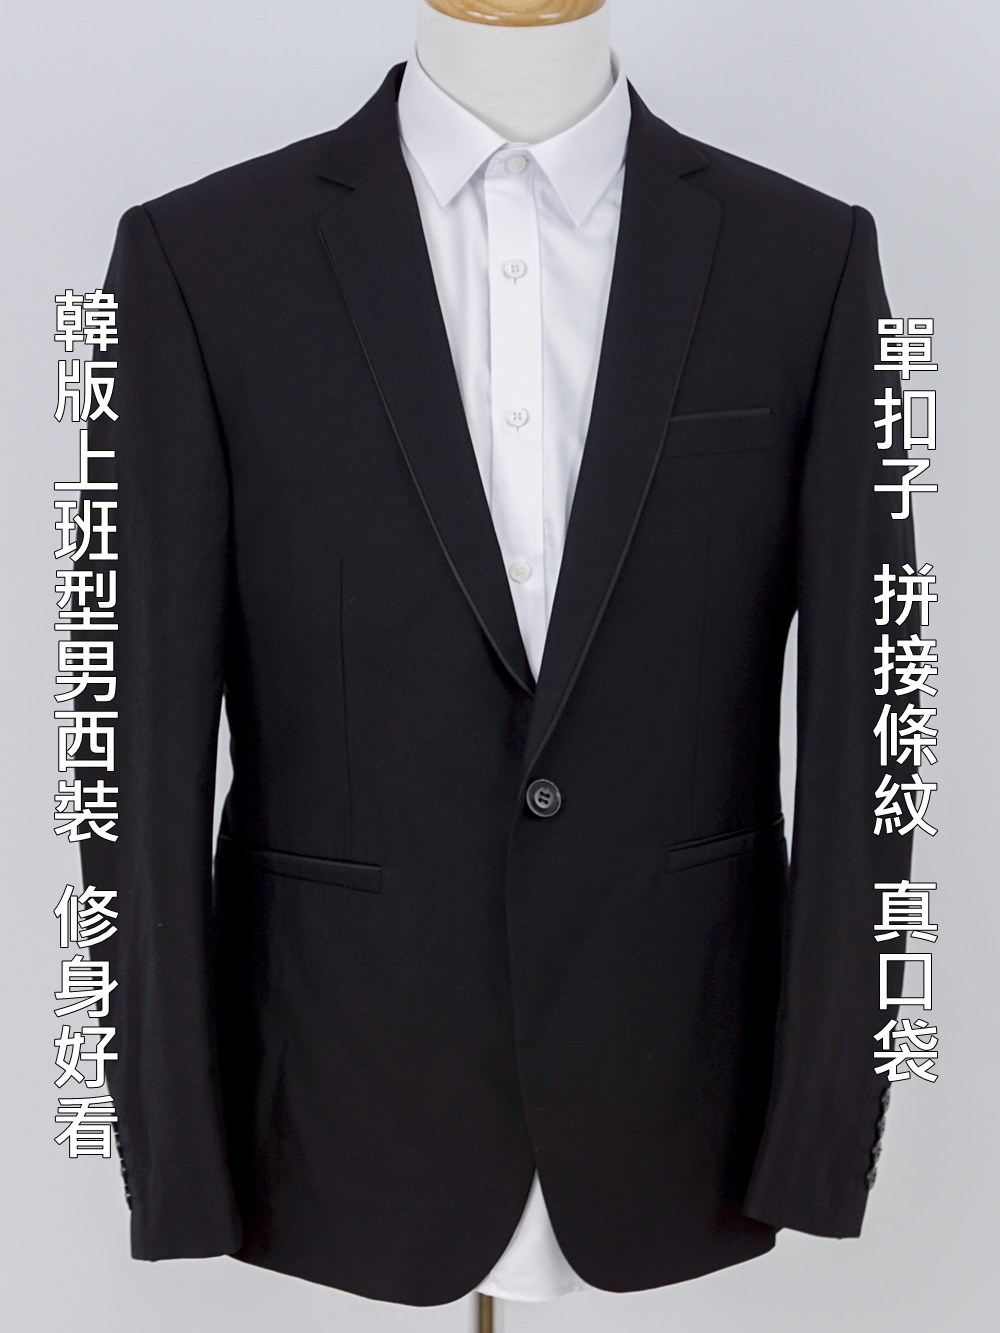 高品質男上班婚禮西裝外套(拼接條紋)mcpj10